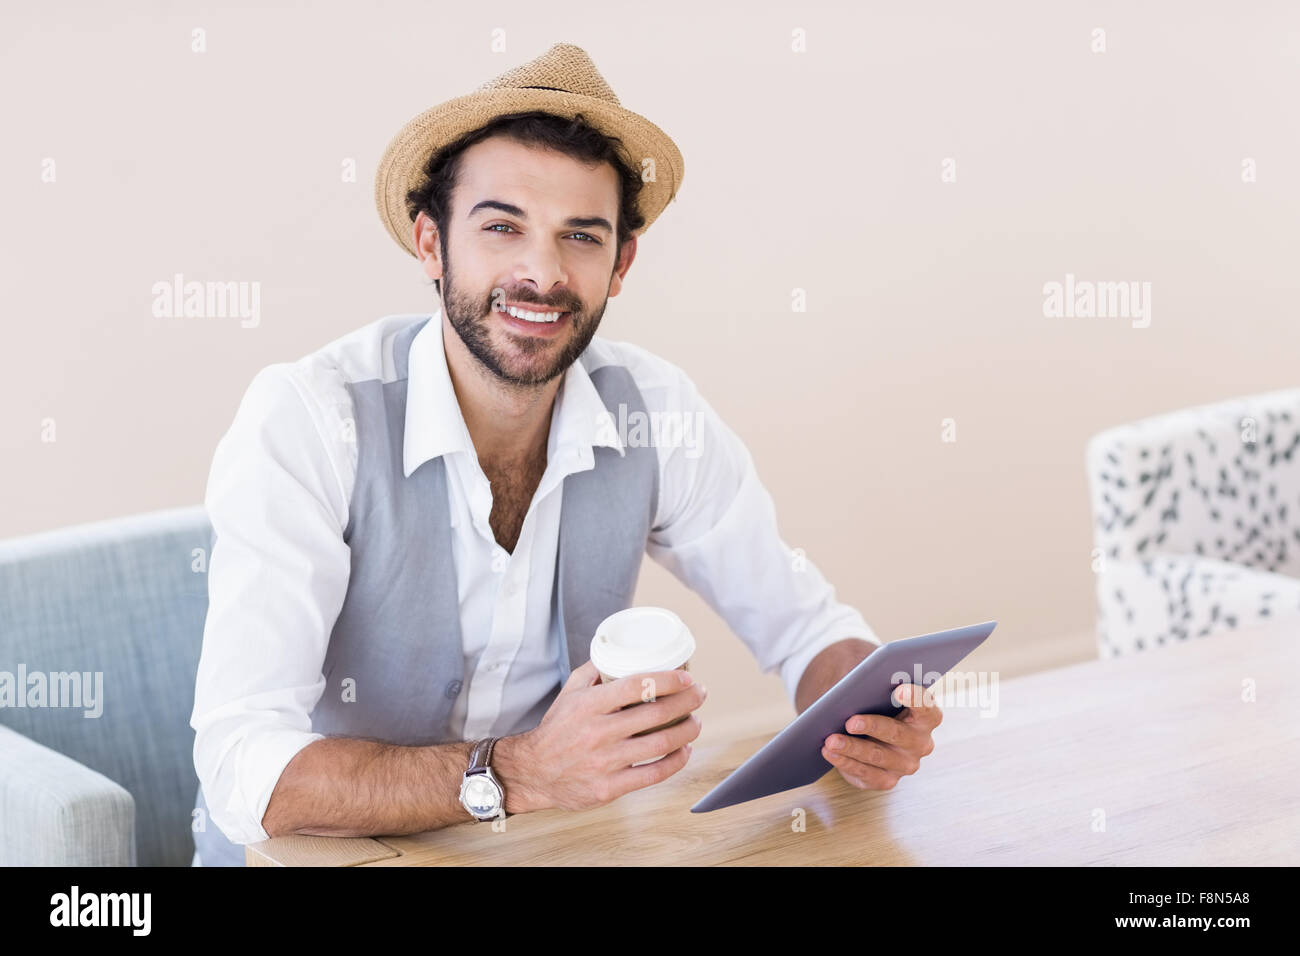 Retrato del hombre sonriente Celebración de tabletas y copa desechable Foto de stock